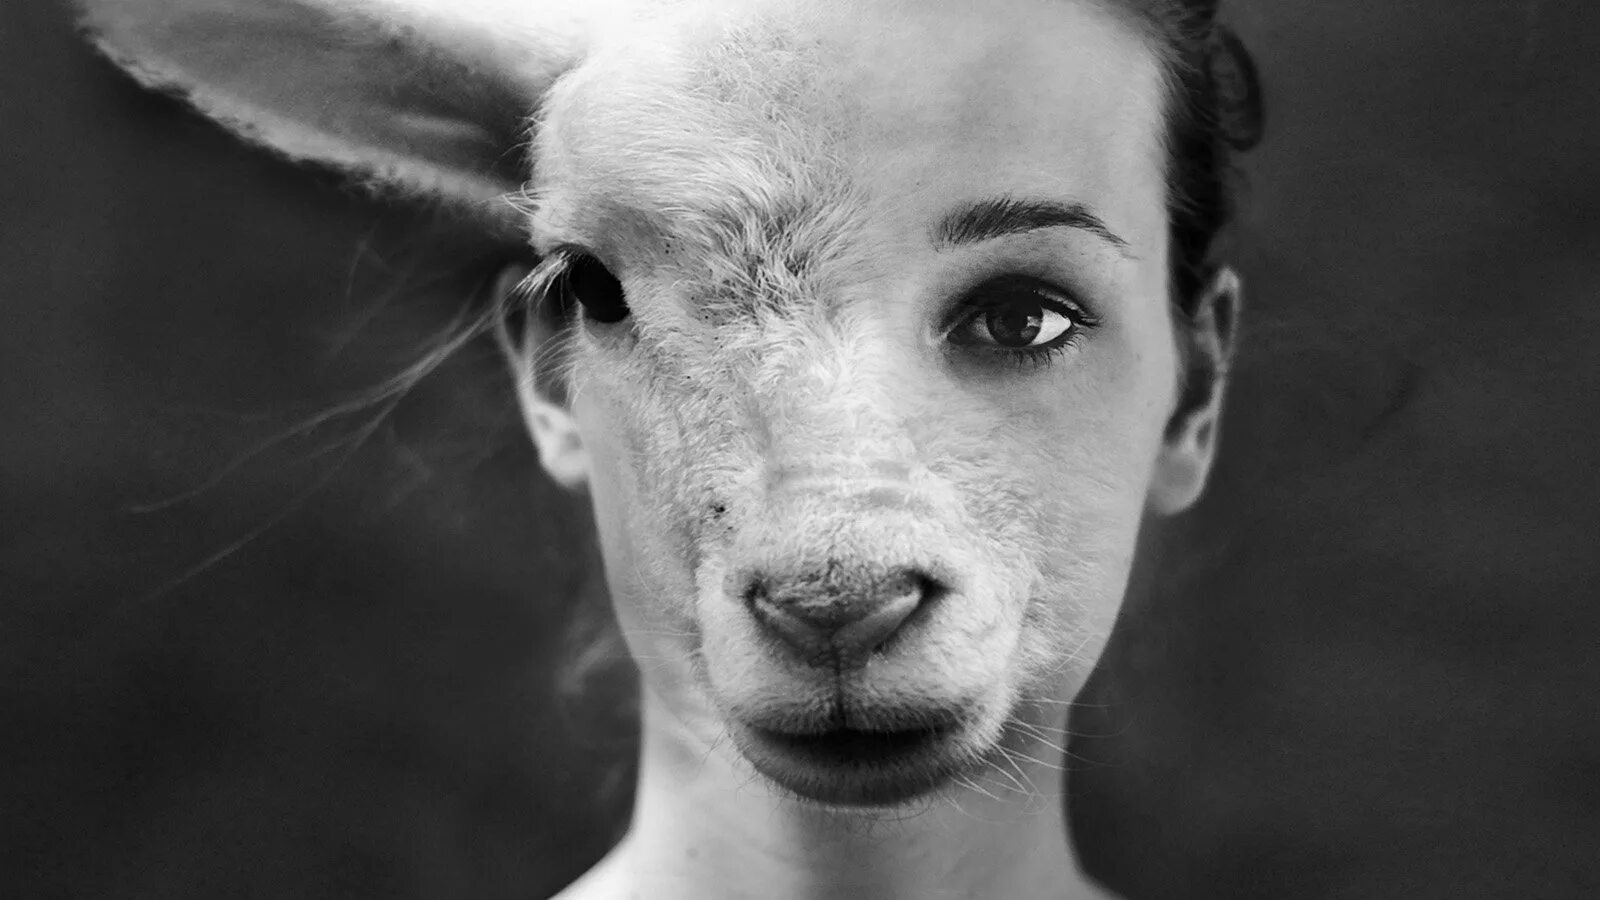 Люди ягнята. Девушка овца. Девушки и козы. Девушка с лицом козы.